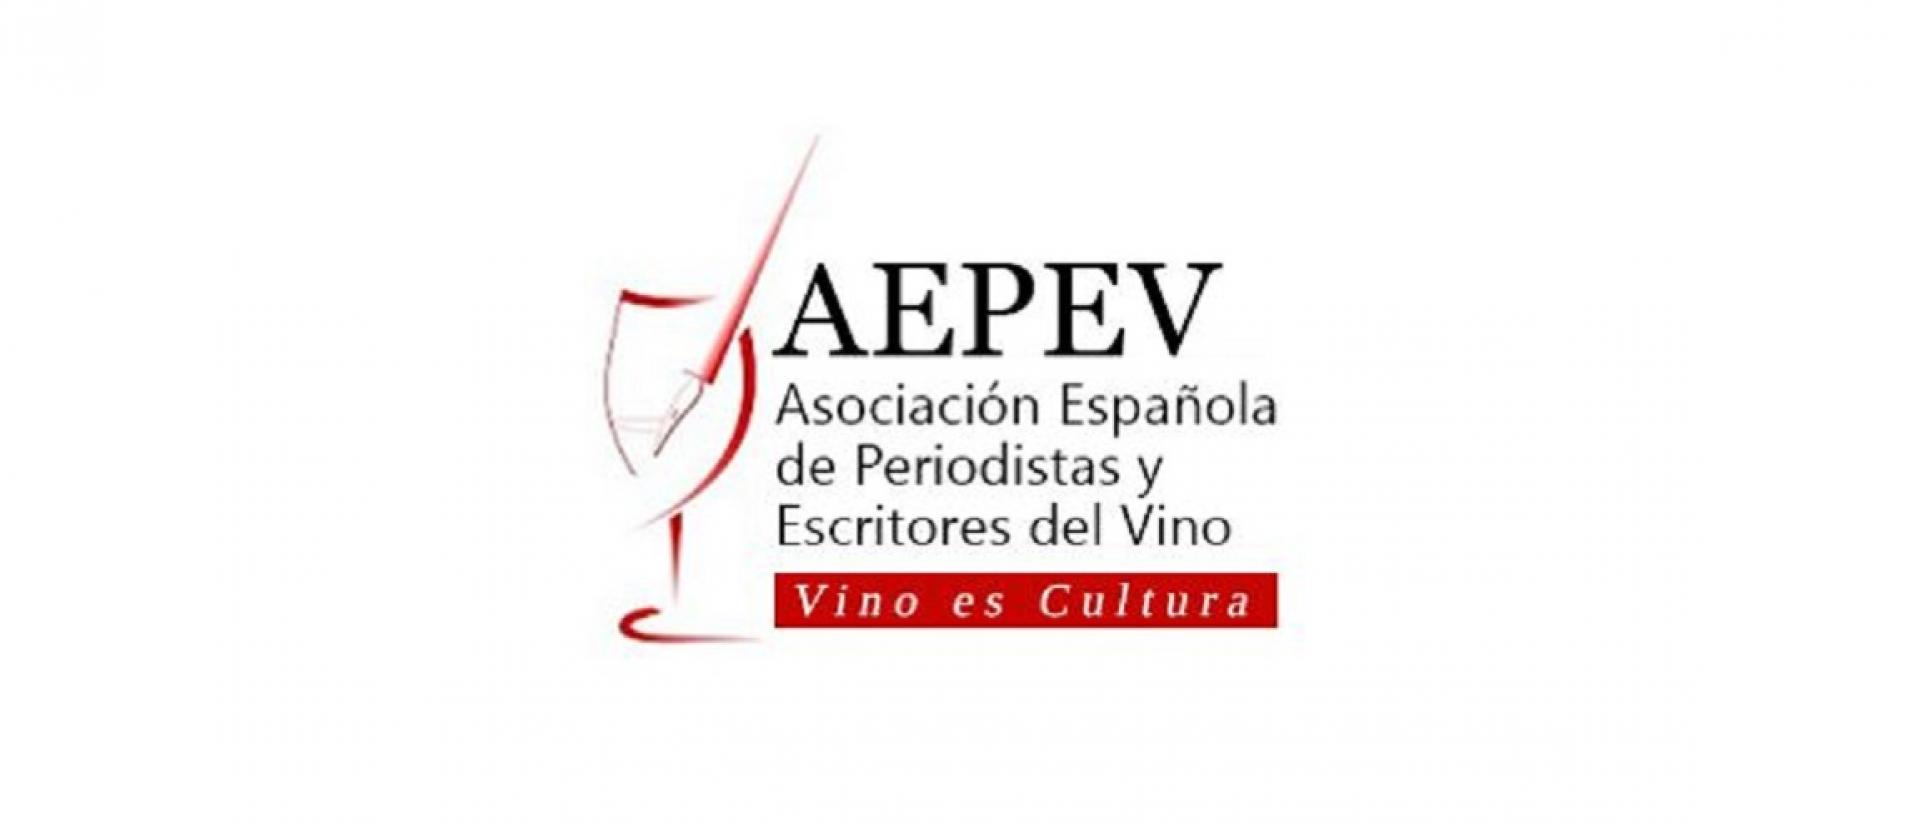 Gustavo López es elegido miembro de la Asociación Española de Periodistas y Escritores del Vino